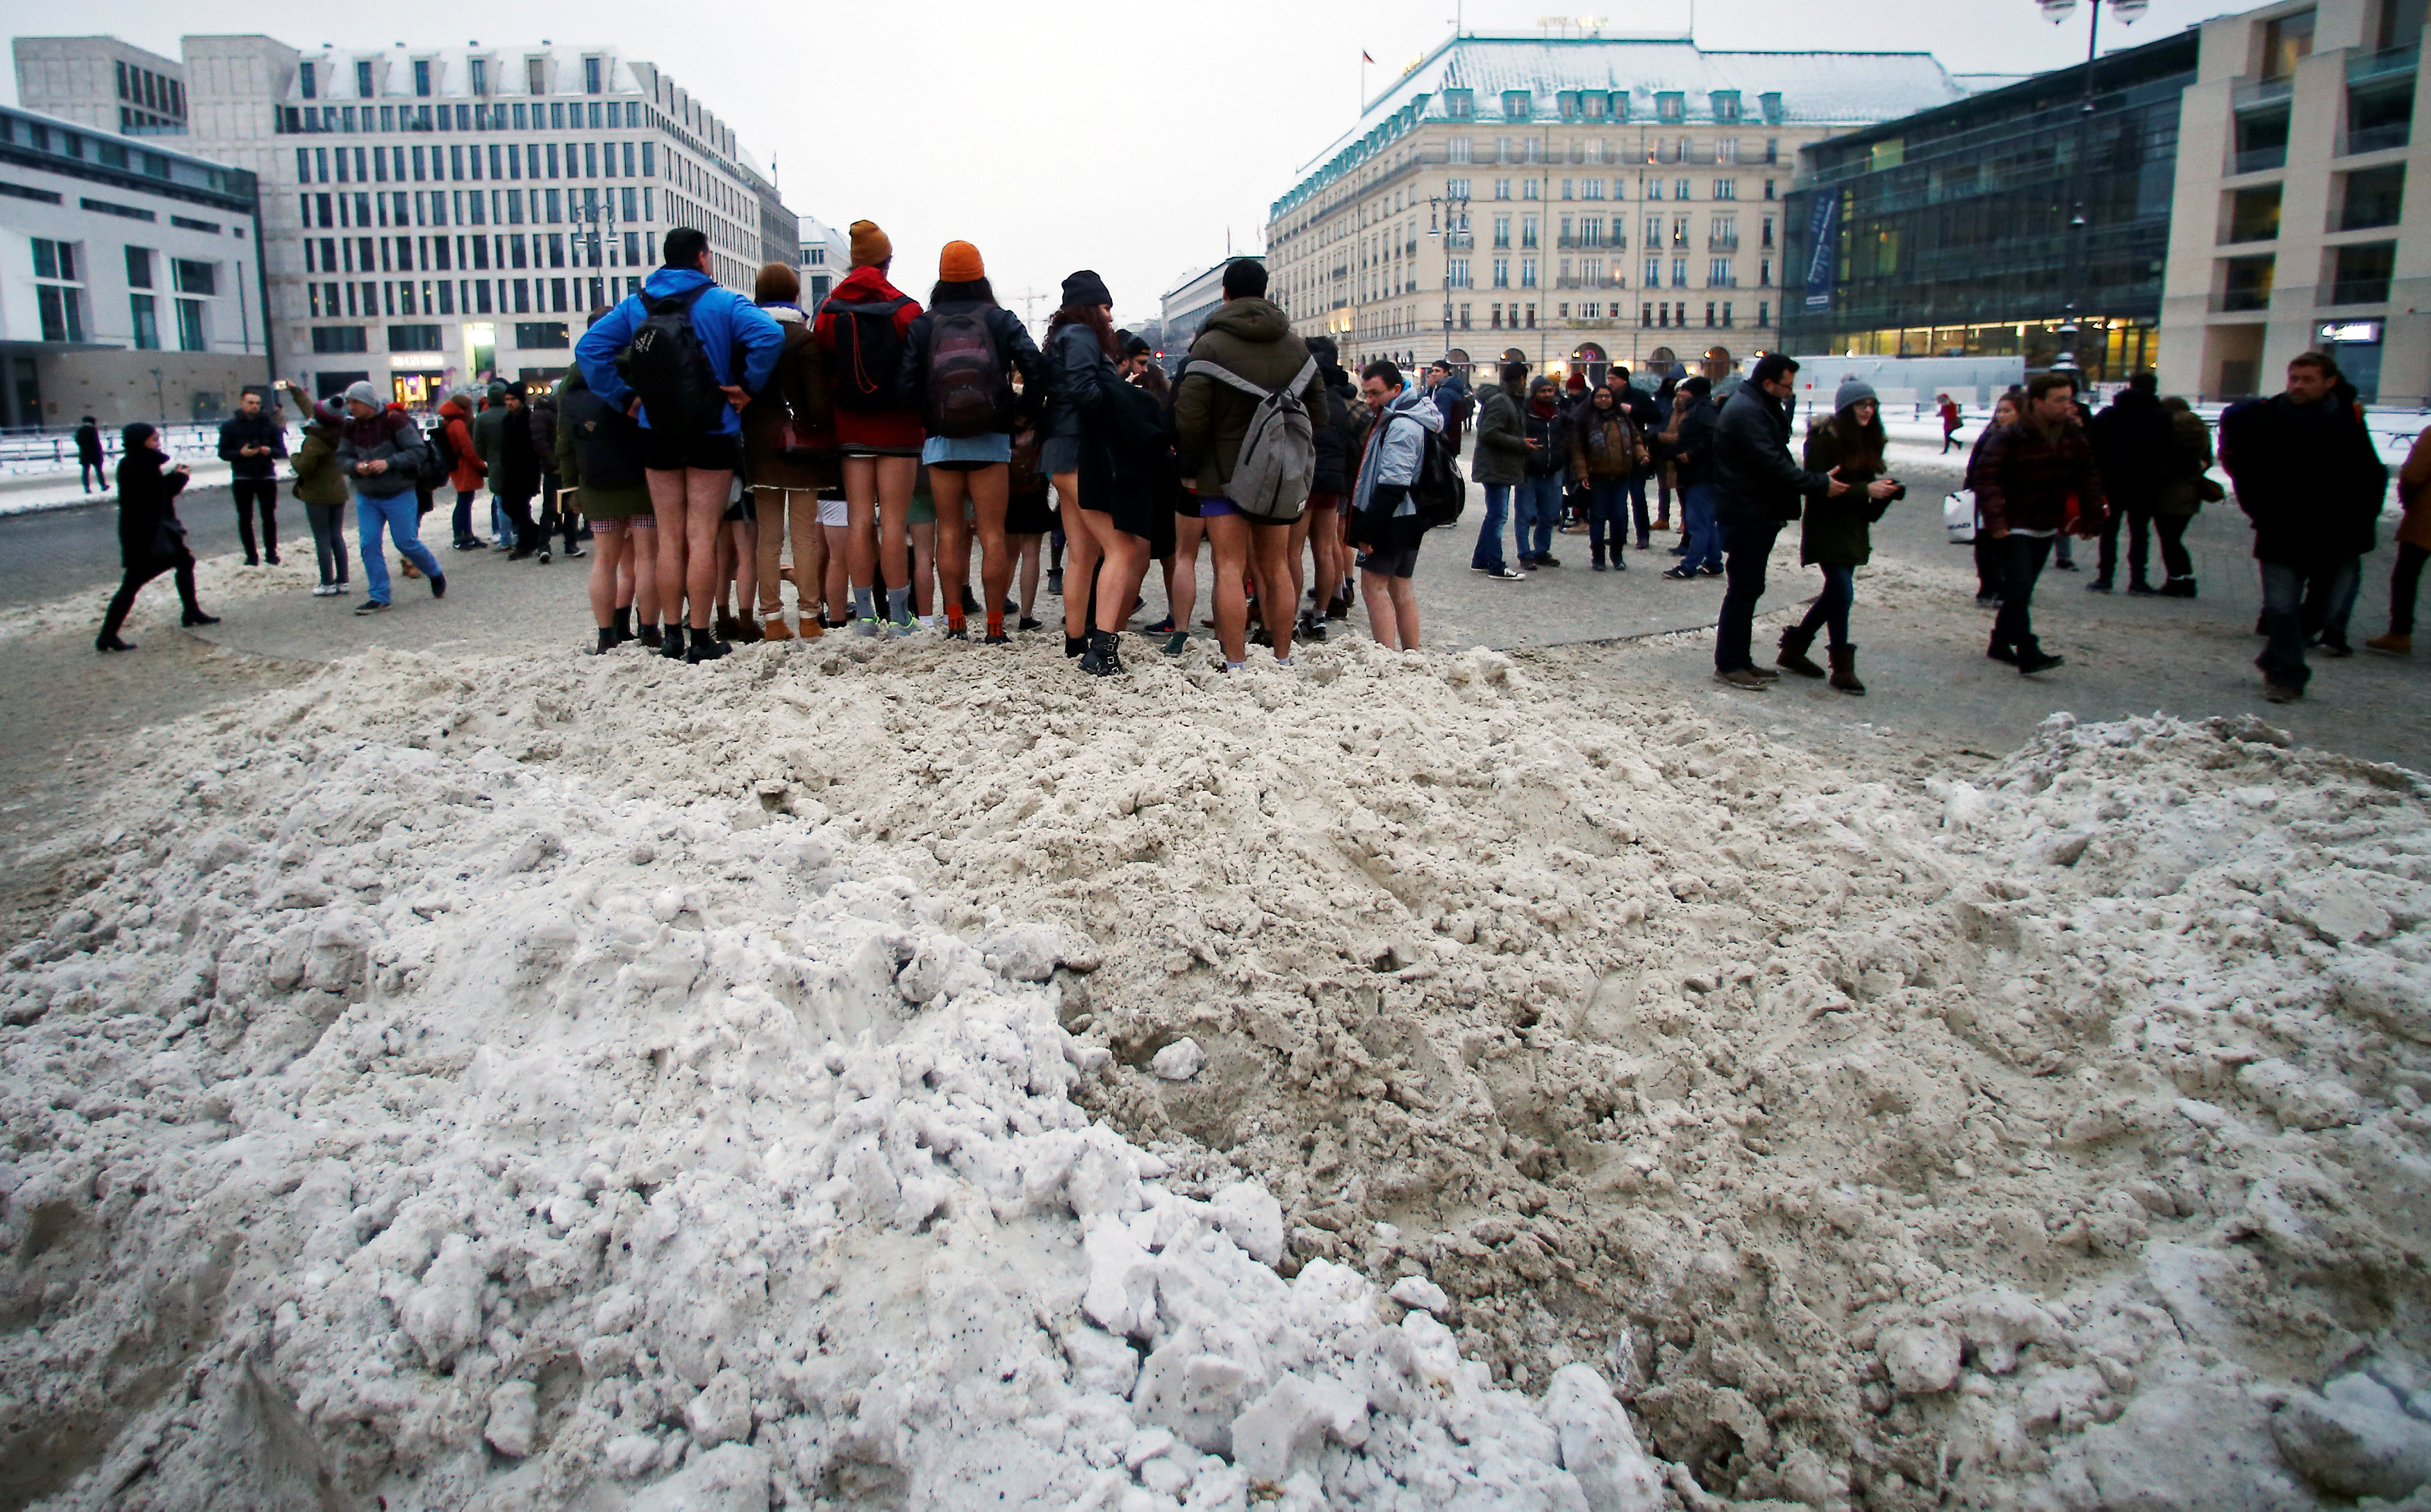 صورة جماعية فى الثلوج أمام بوابة براندنبورغ في برلين